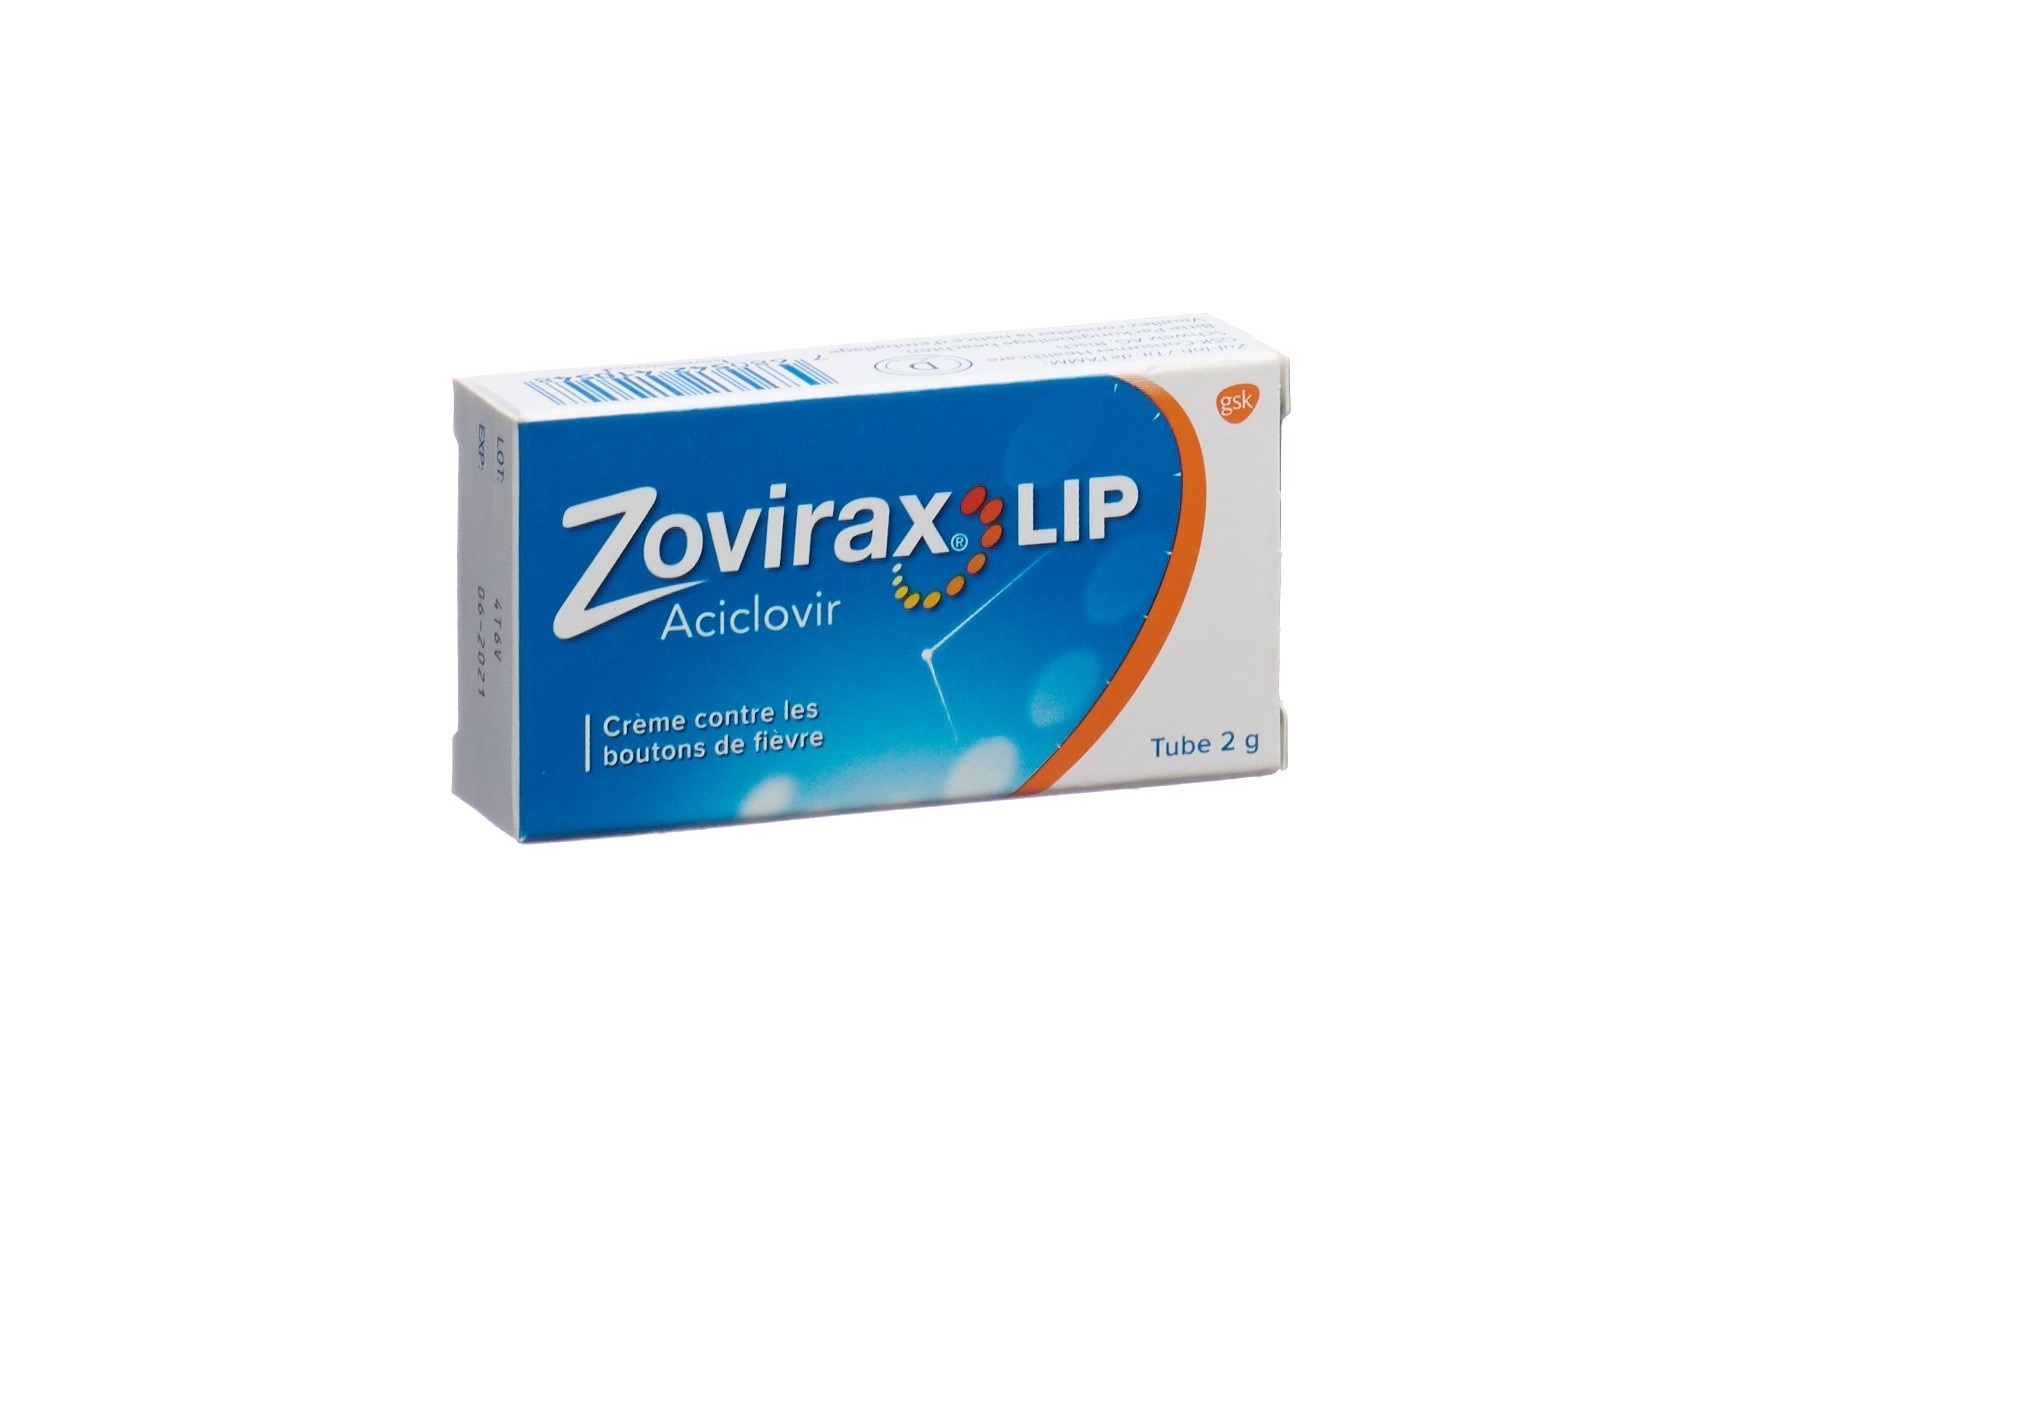 ZOVIRAX Lip crème contre les boutons de fièvre tube 2 g